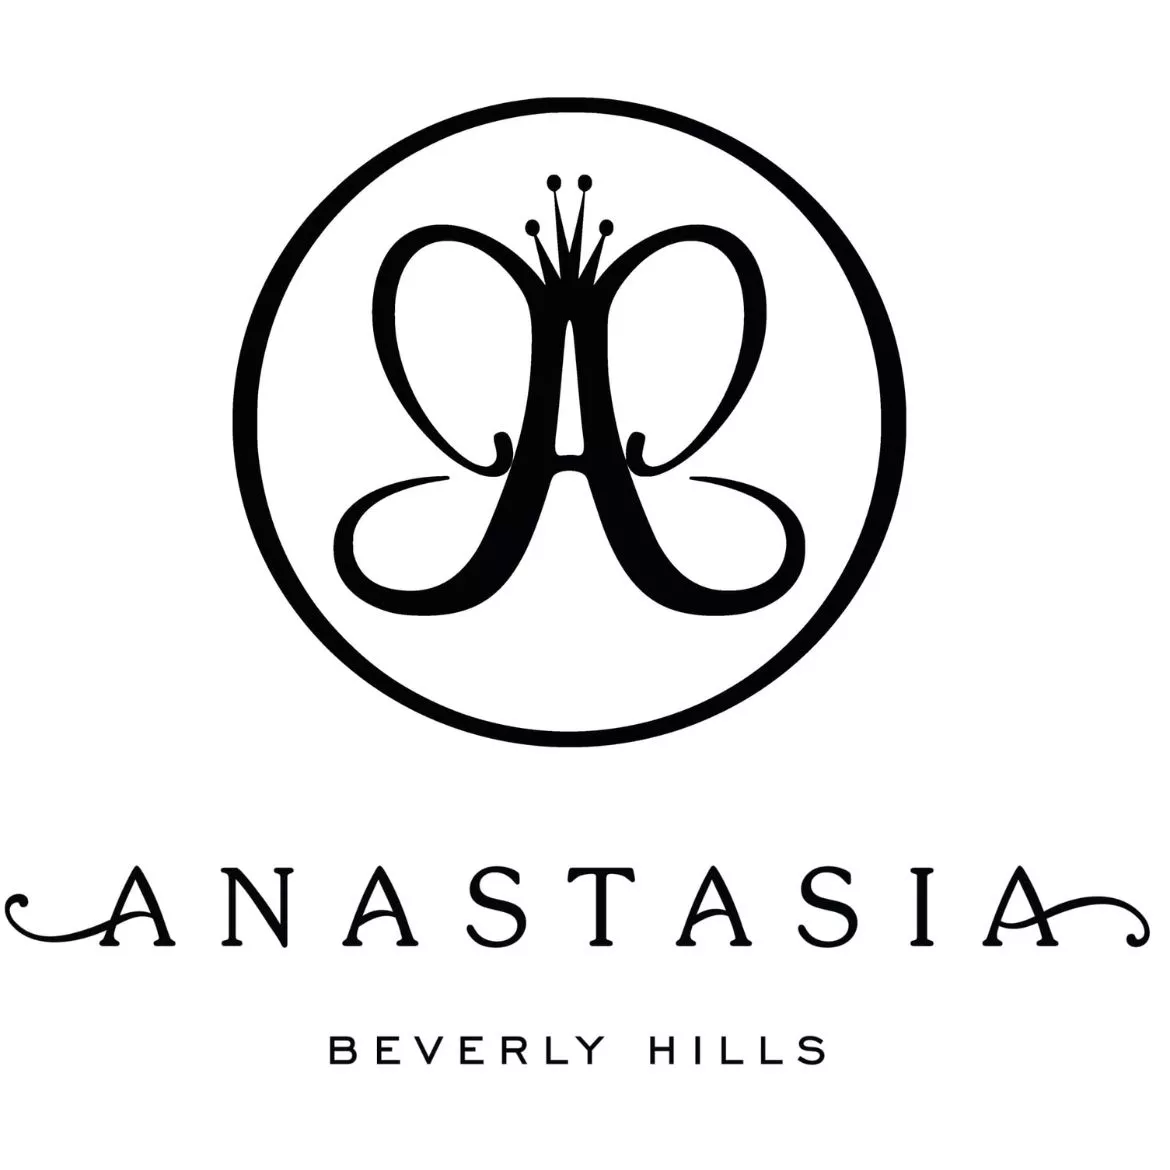 Anatasia Beverly Hills